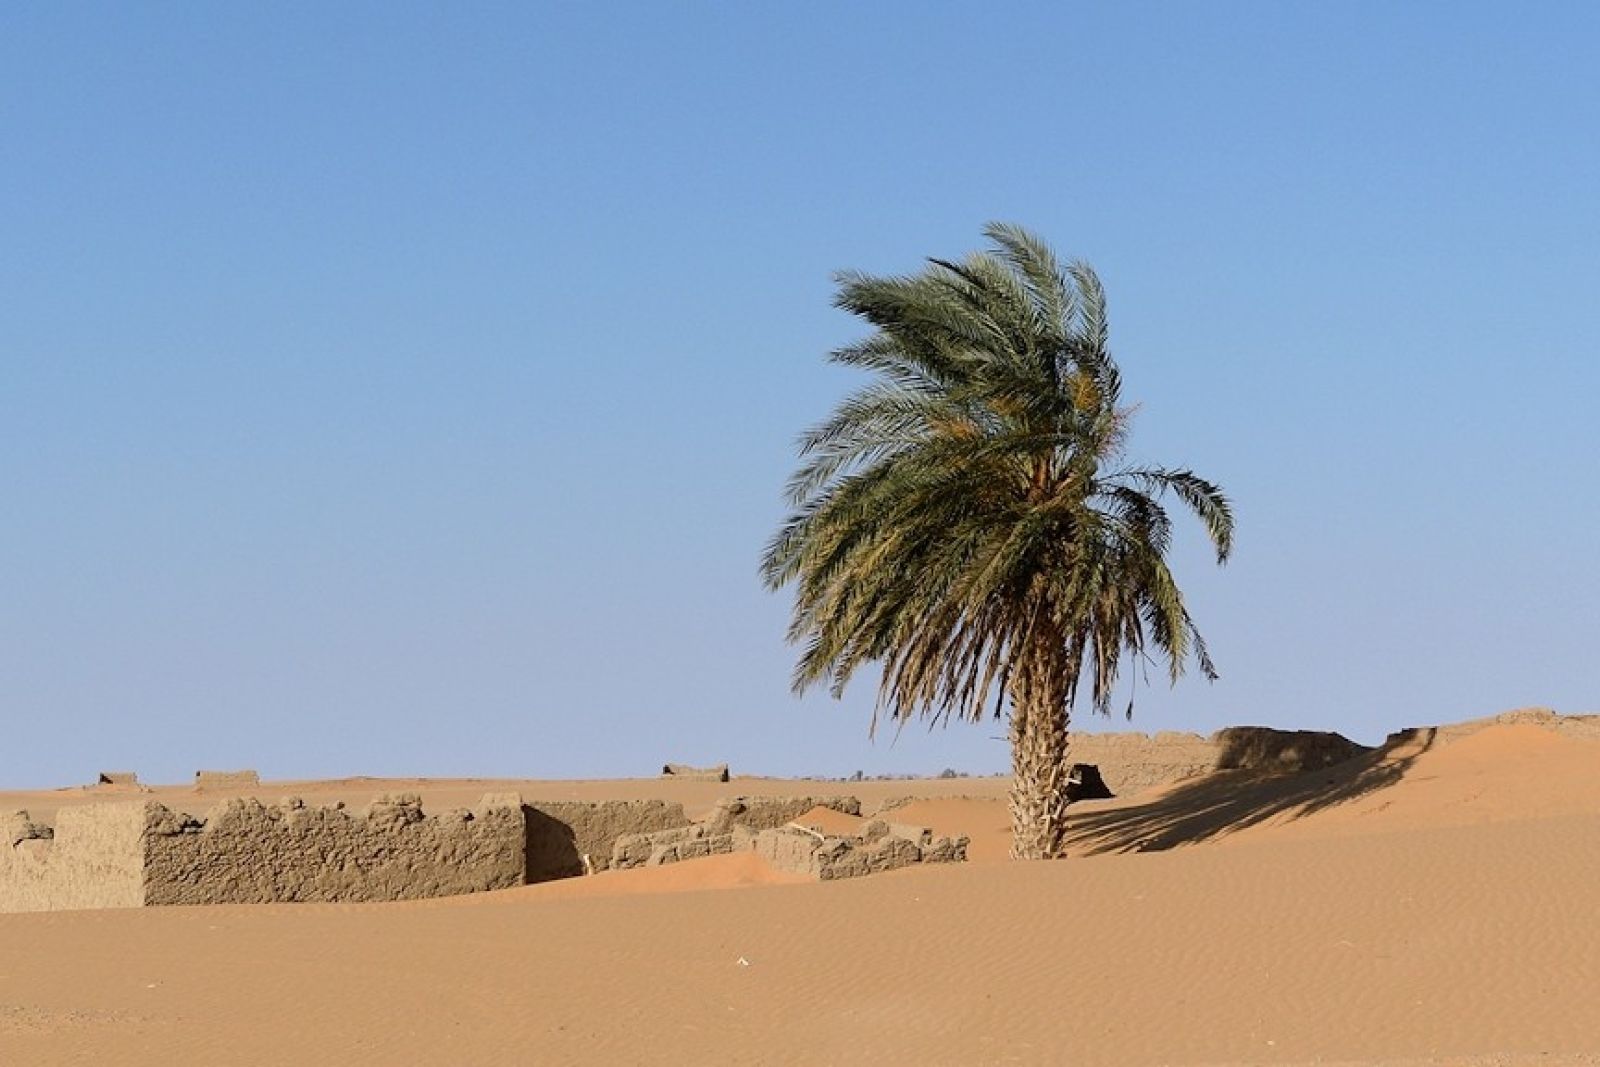 12. Palme in der Wüste